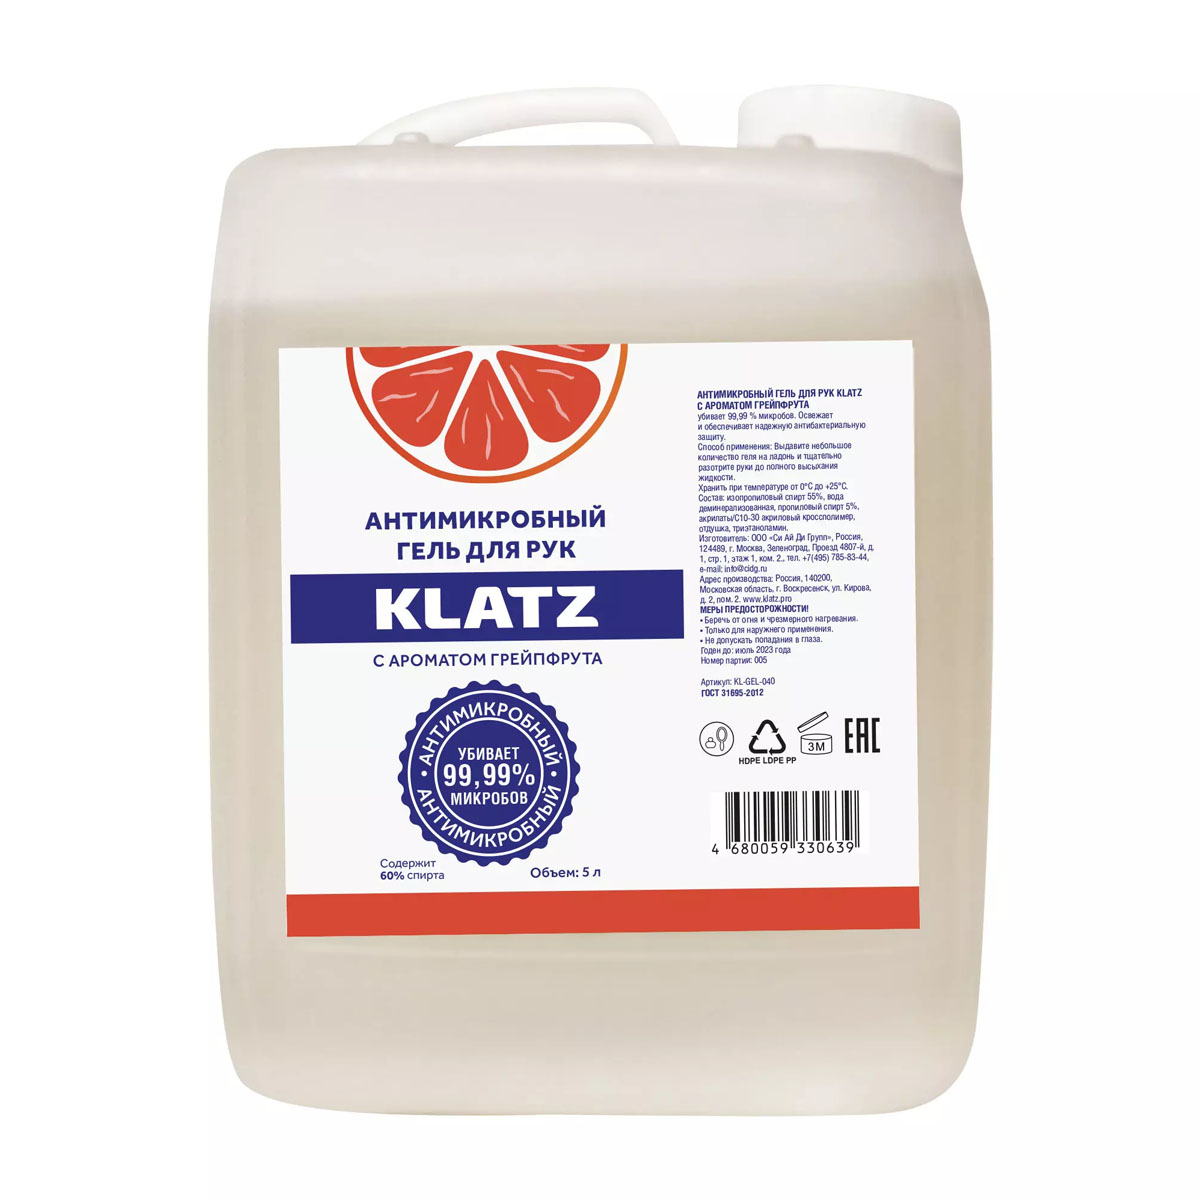 Klatz Антимикробный гель для рук с ароматом грейпфрута, 5 л (Klatz, Antimicrobial)